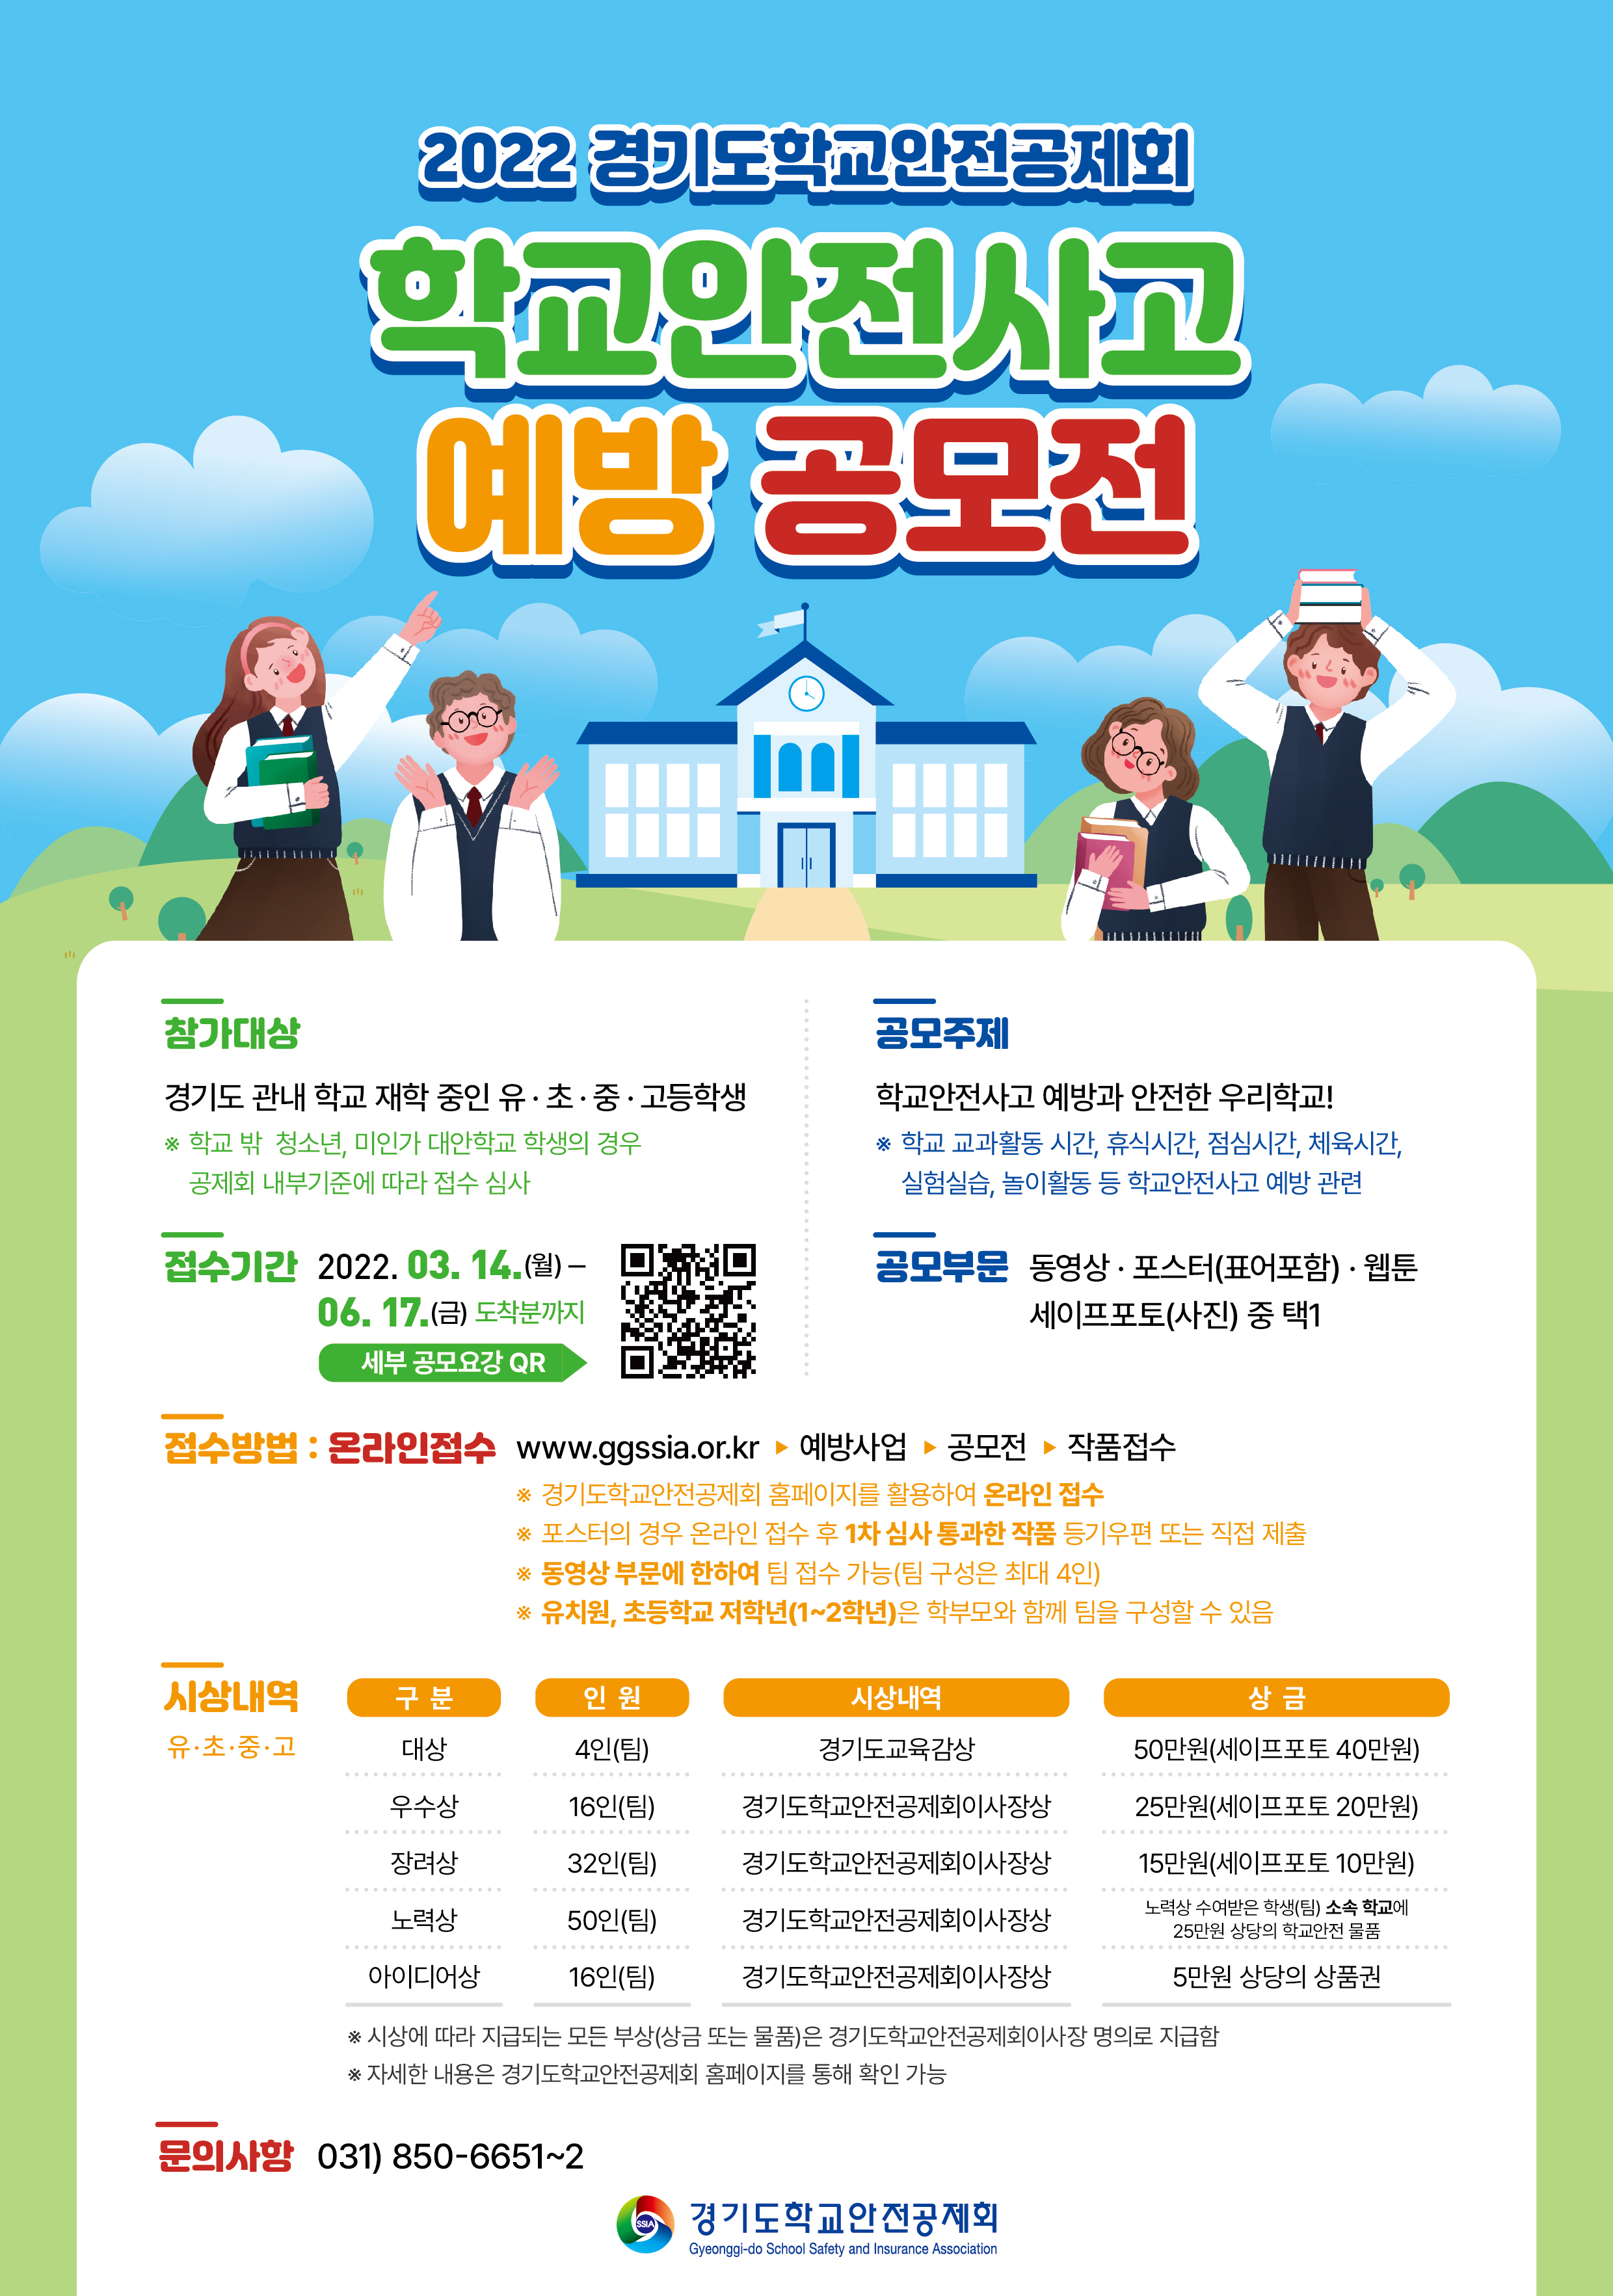 경기도학교안전공제회 2022 학교안전사고 예방 공모전 개최 및 접수기간 연장 안내